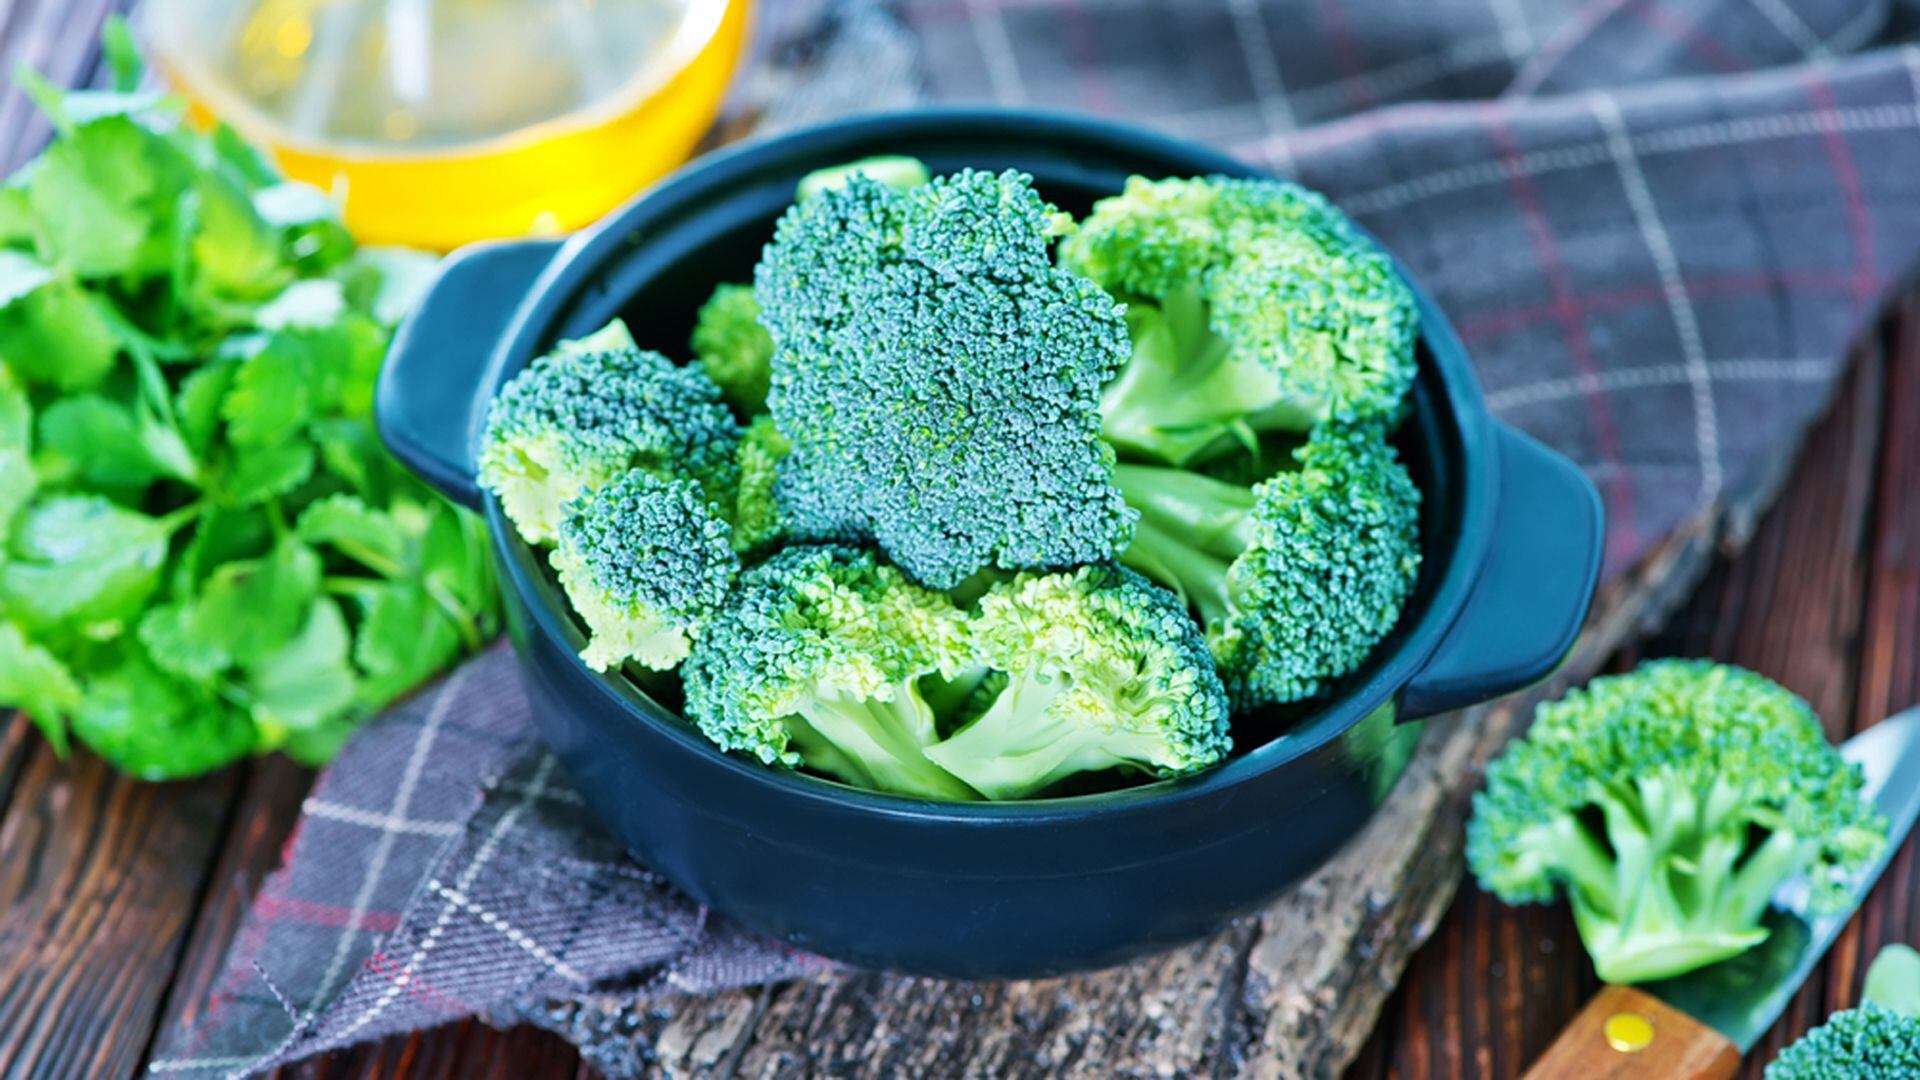 El consumo excesivo de brócoli tiene efectos secundarios (Shutterstock)